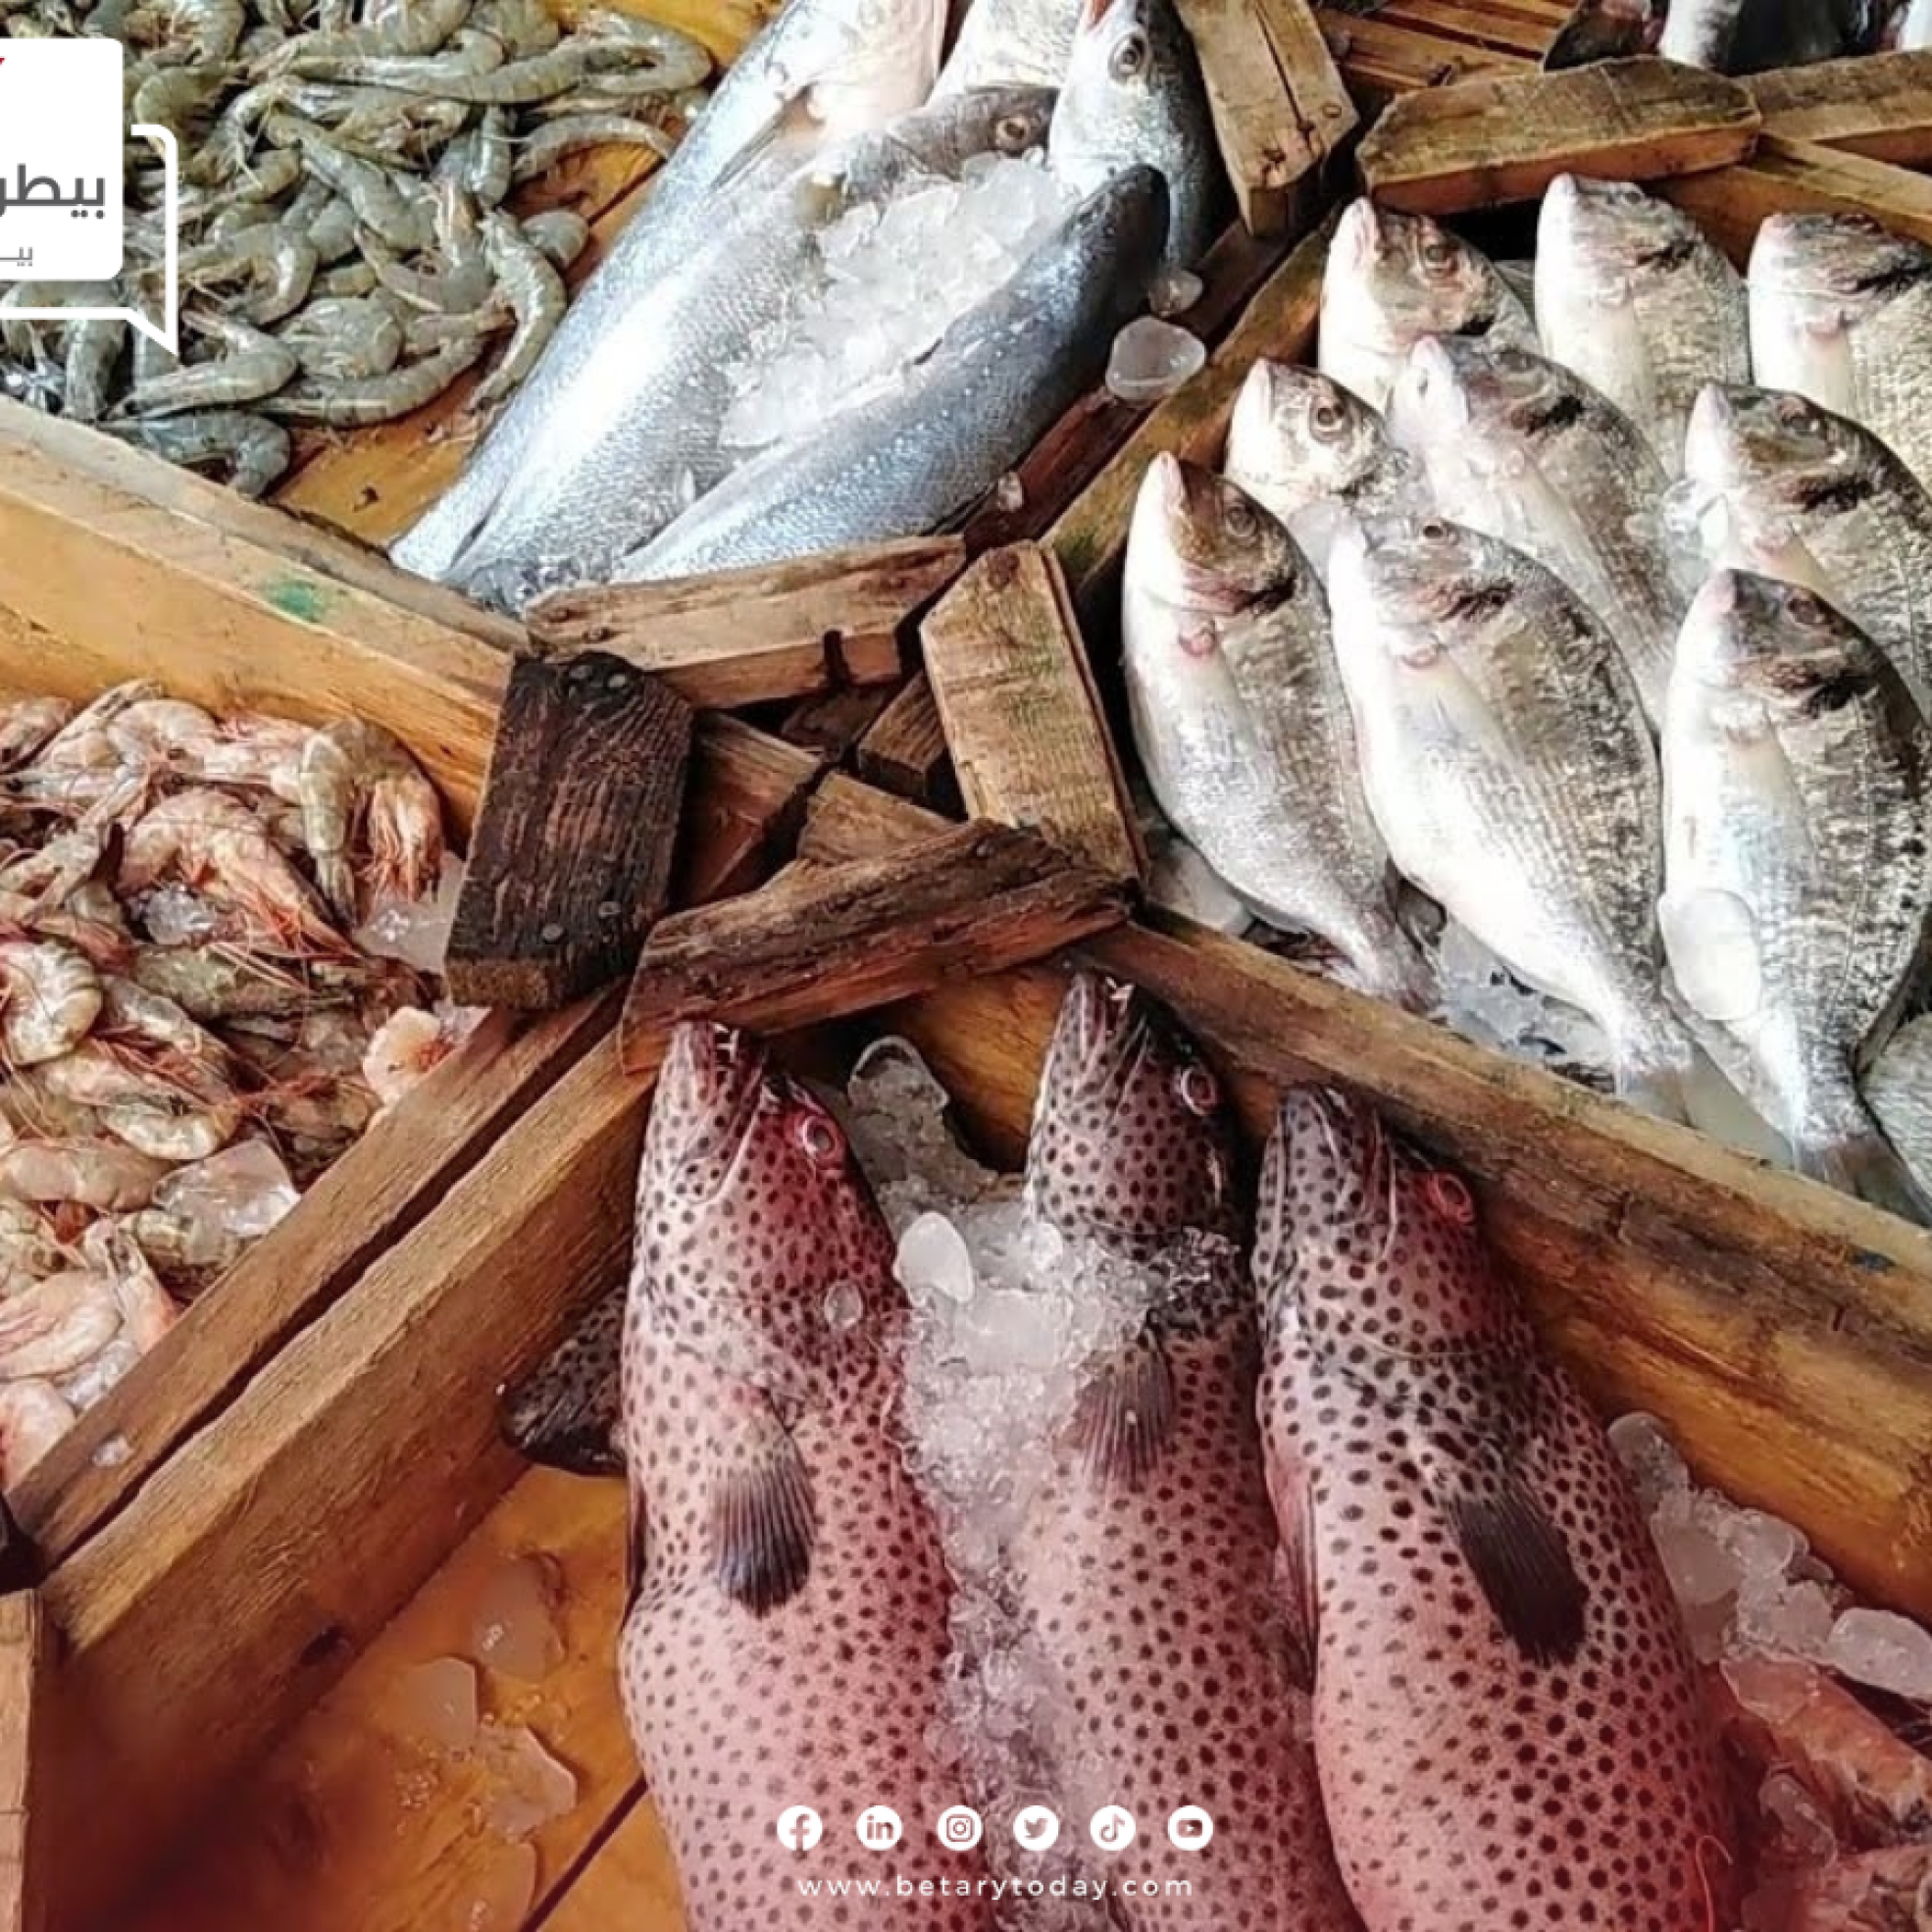 أسعار السمك اليوم الجمعة بعد مقاطعة شراء الأسماك والمأكولات البحرية